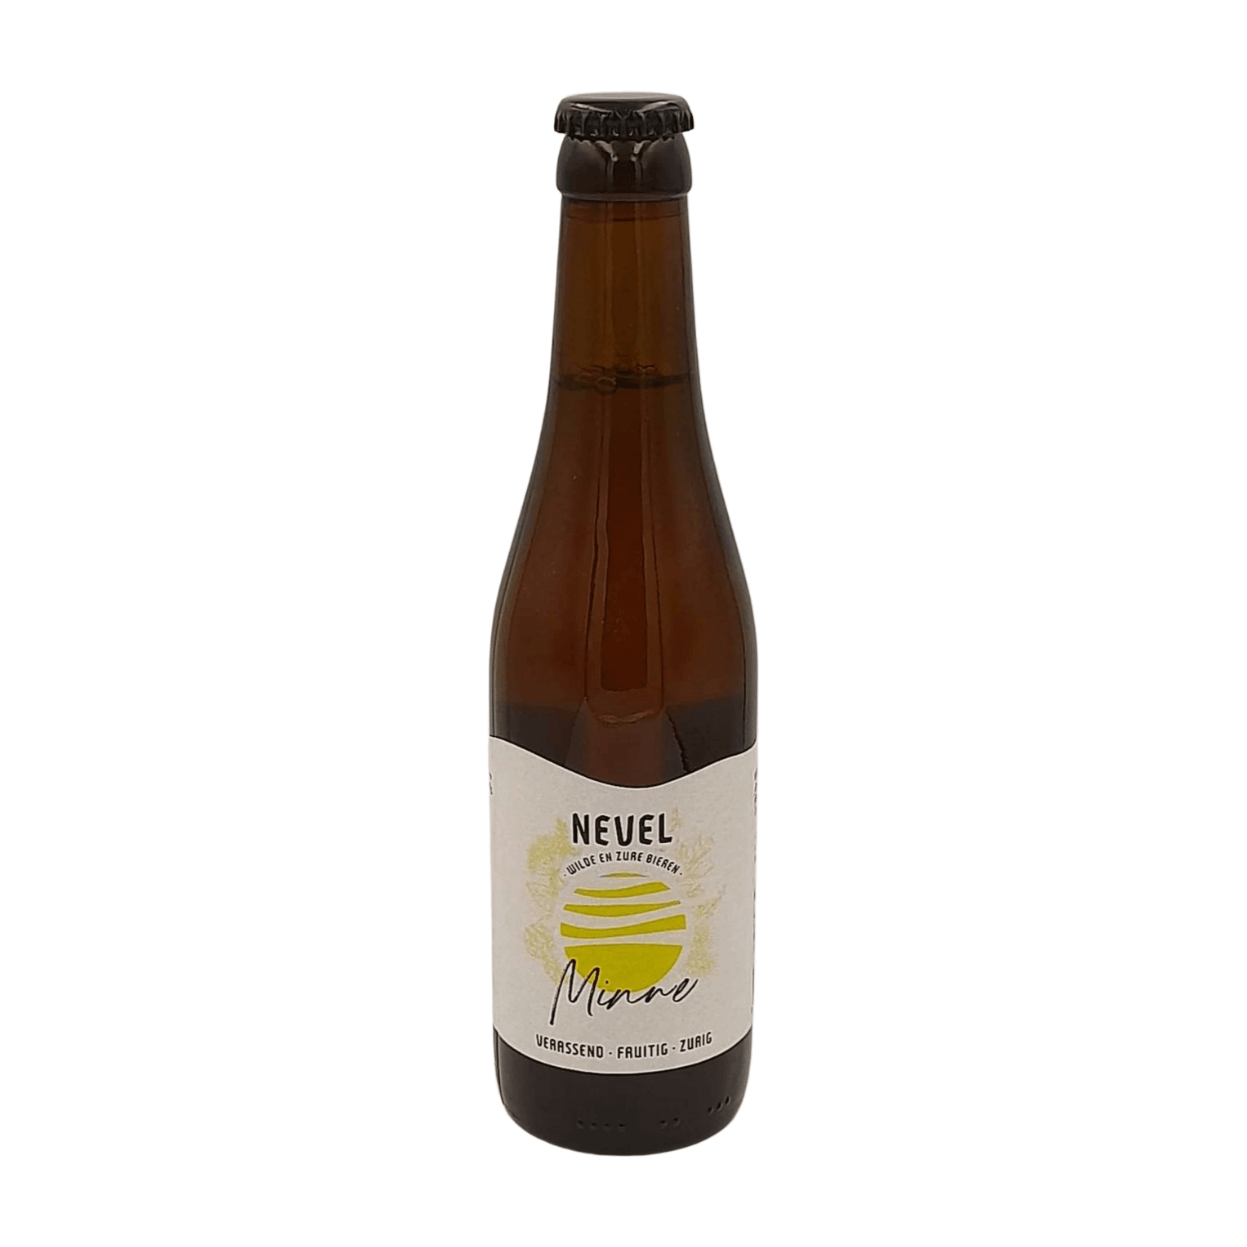 Nevel Wild Ales Minne | Wild Blond Ale Webshop Online Verdins Bierwinkel Rotterdam